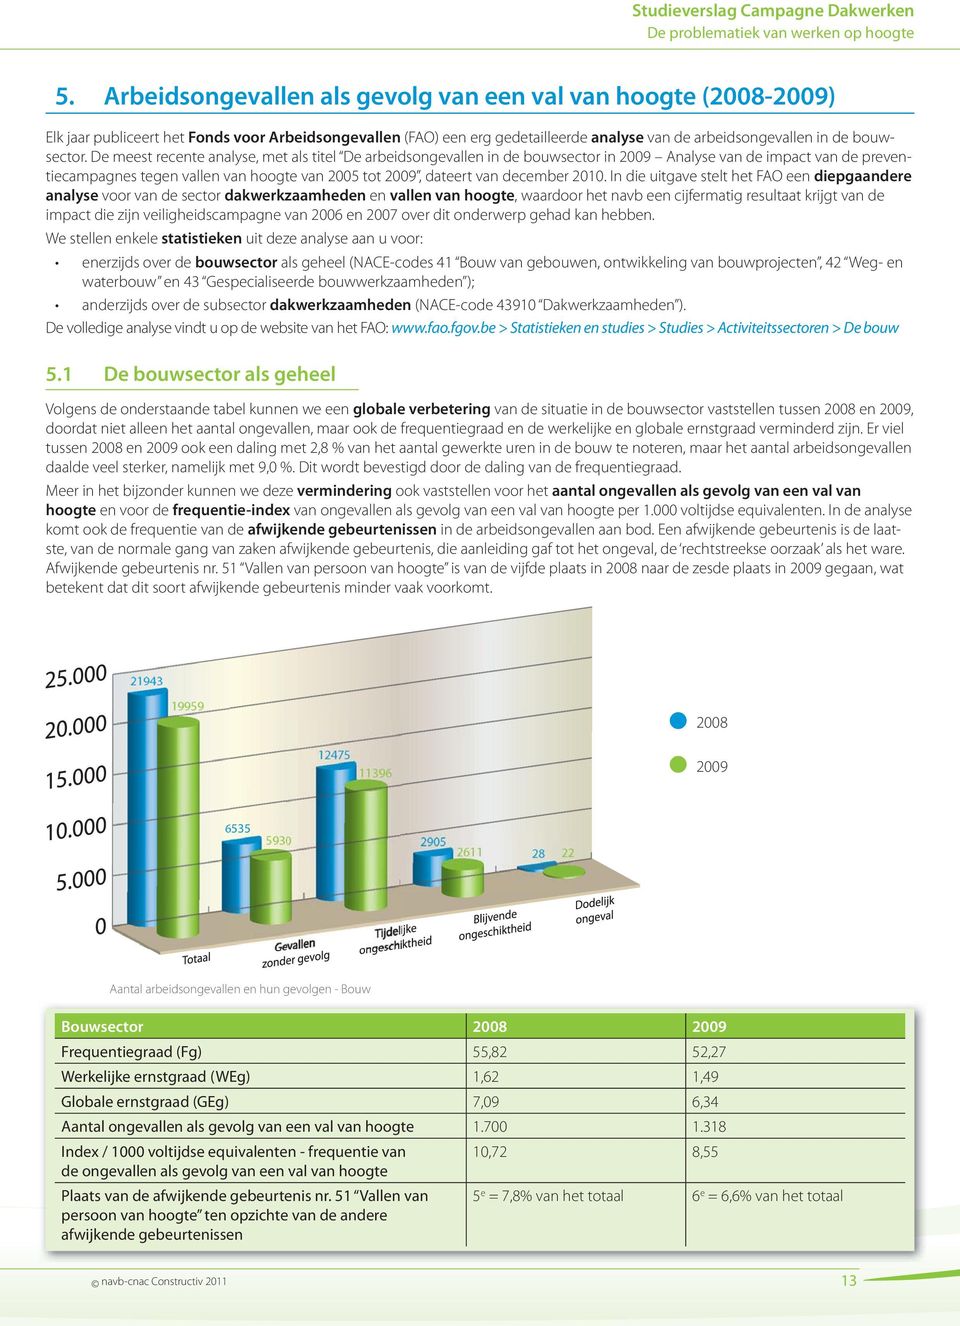 2010. In die uitgave stelt het FAO een diepgaandere analyse voor van de sector dakwerkzaamheden en vallen van hoogte, waardoor het navb een cijfermatig resultaat krijgt van de impact die zijn